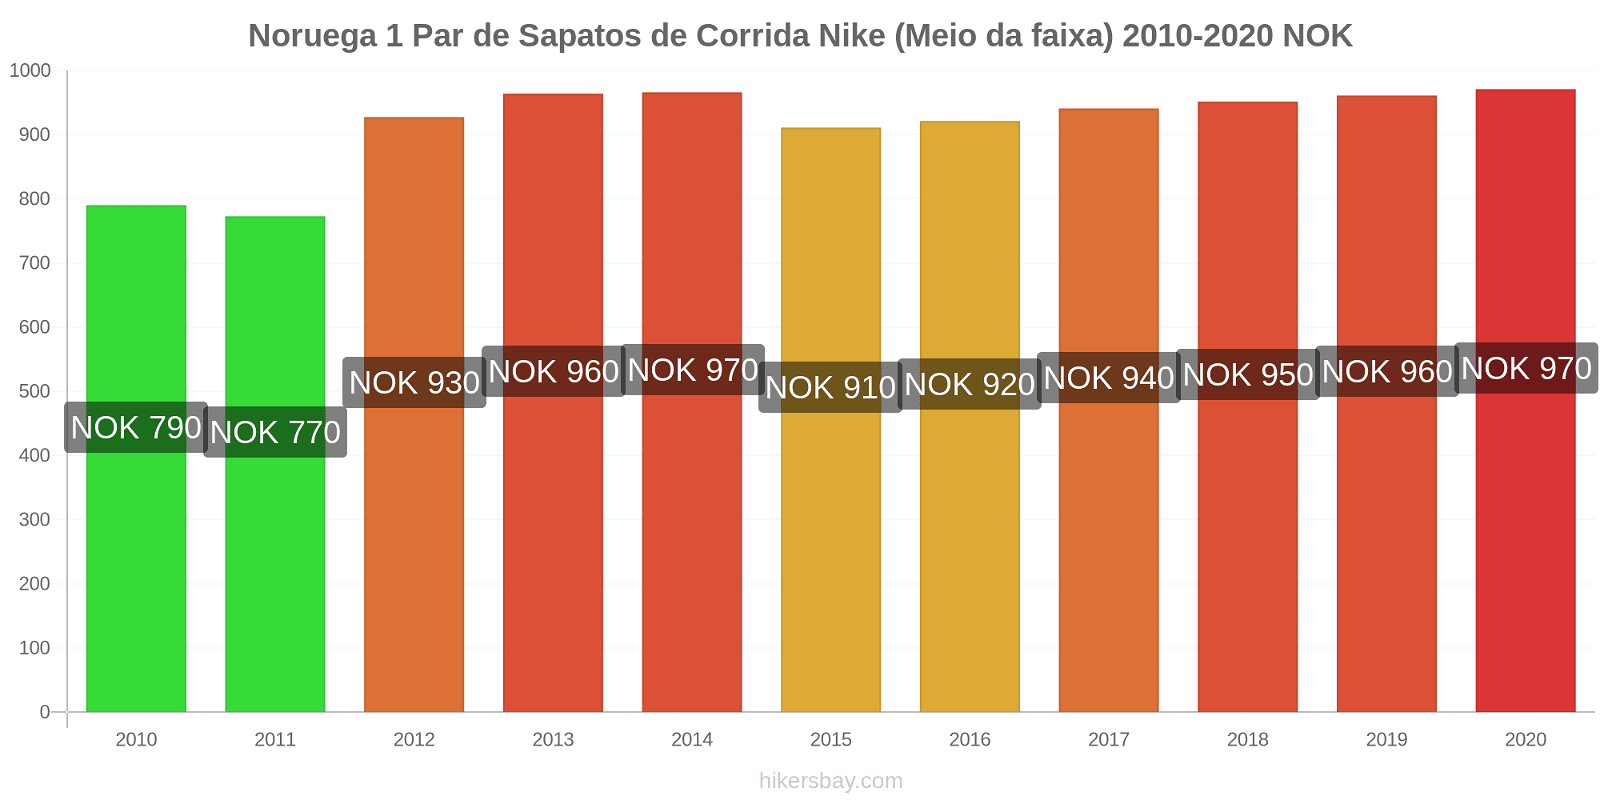 Noruega variação de preço 1 par de tênis Nike (mid-range) hikersbay.com